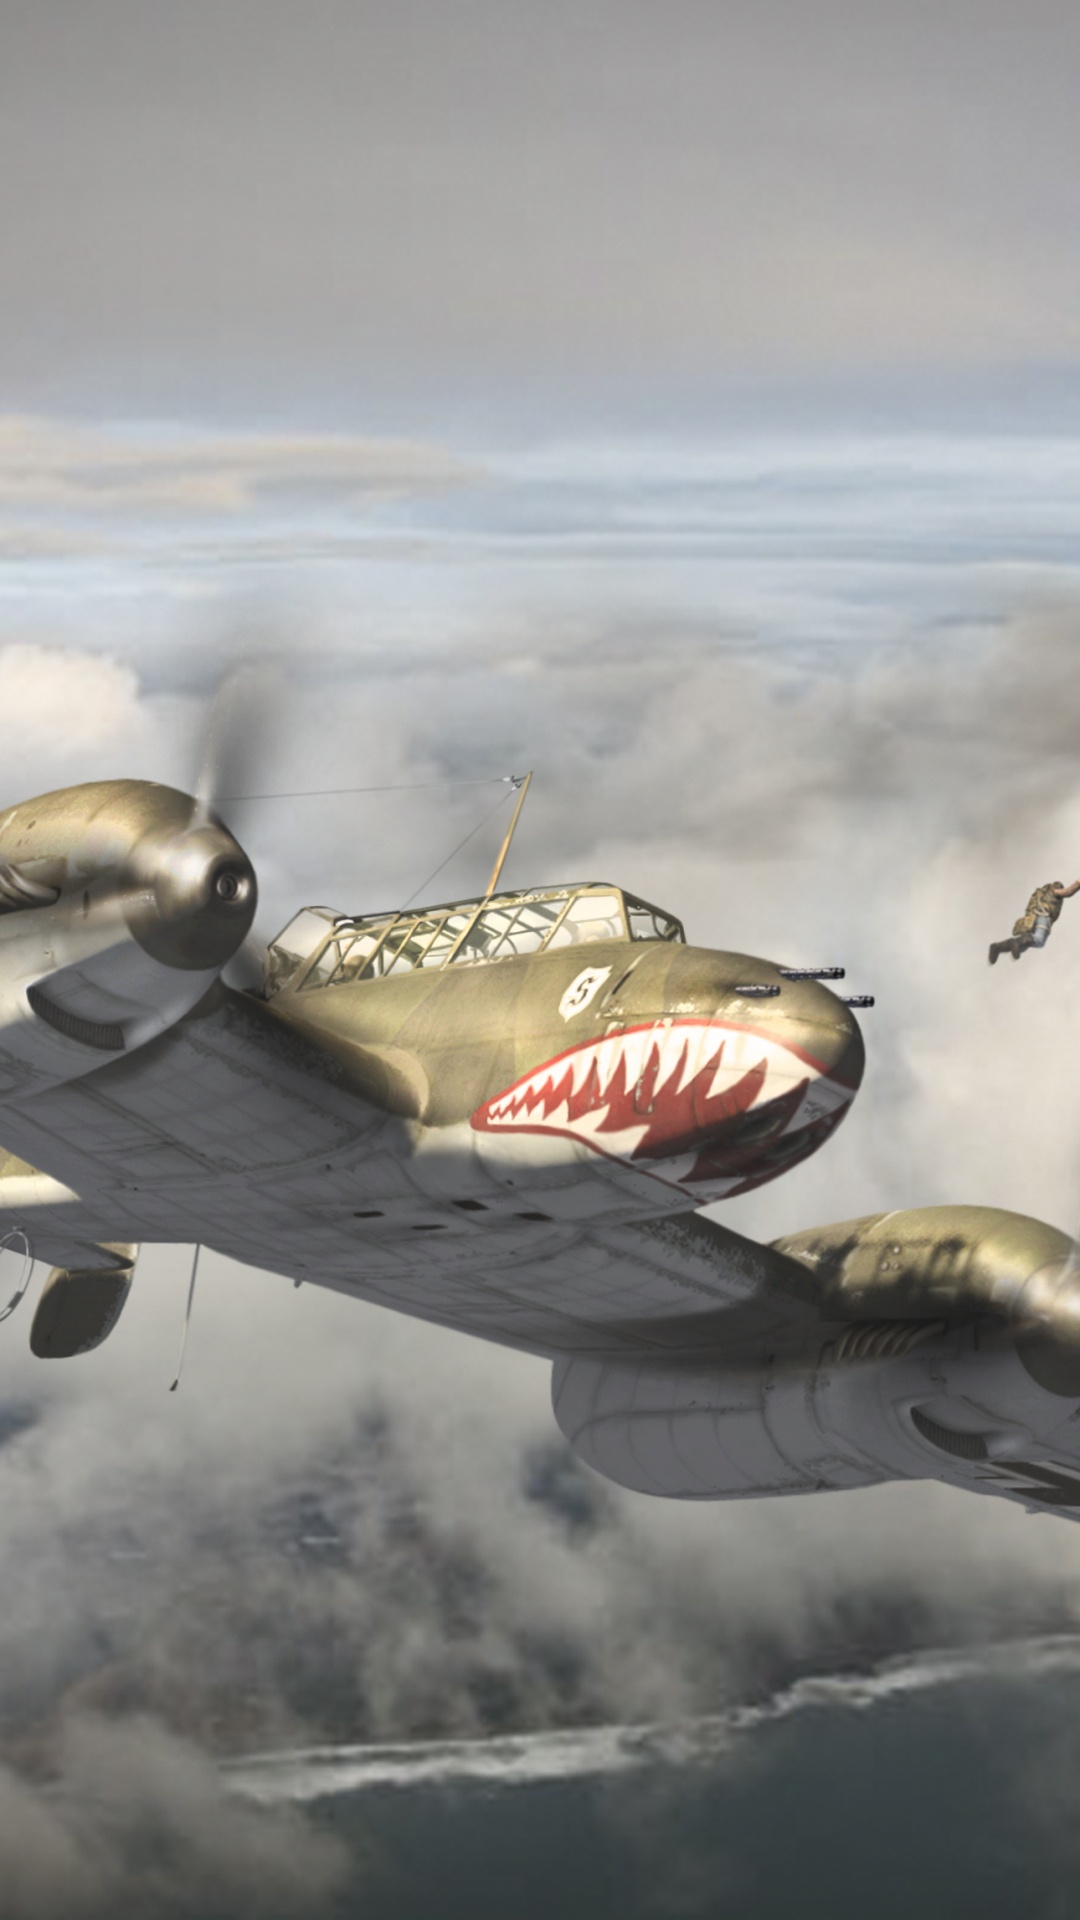 第二次世界大战, 绘画, 军用飞机, 航空, 空军 壁纸 1080x1920 允许